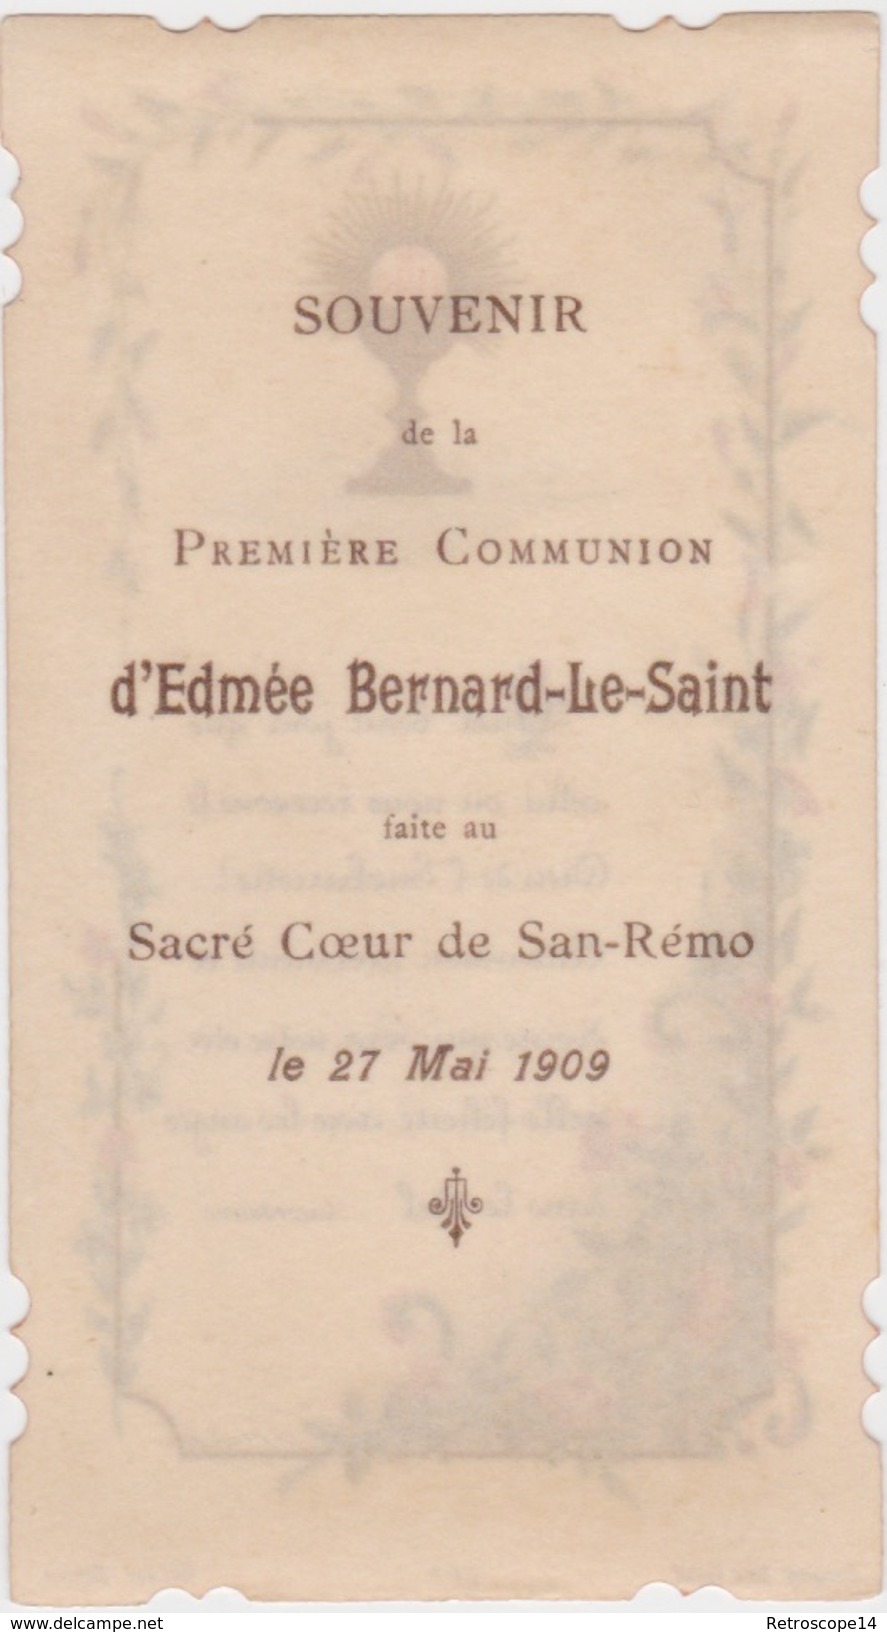 EDMÉE BERNARD LE-SAINT. Souvenir De Première Communion, 1909, SAINT SÉBASTIEN (San Sebastian, Donastia, Pays Basque). - Communion